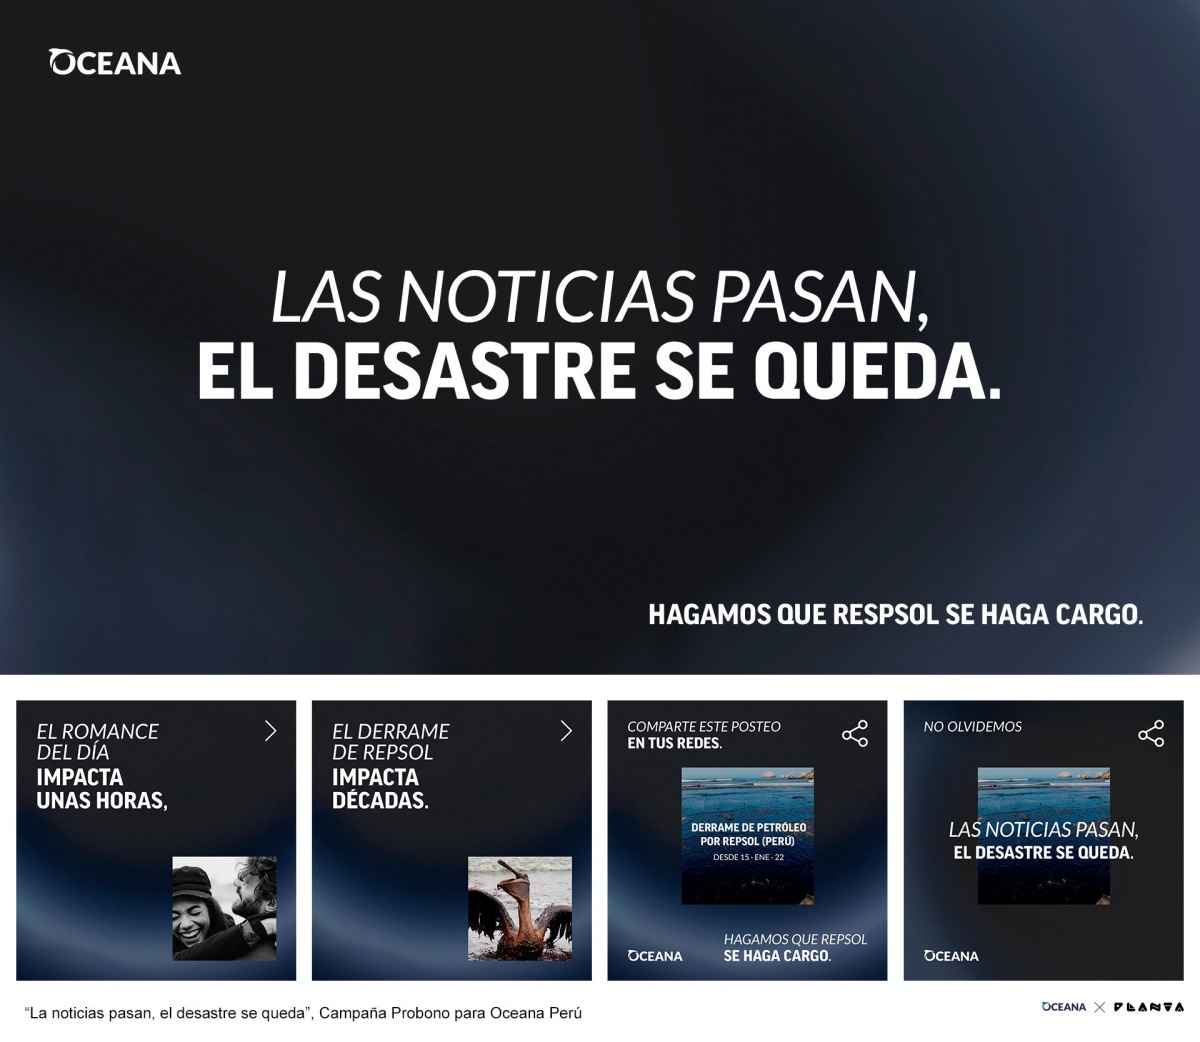 Portada de OCEANA lanza la campaña "Las noticias pasan. El desastre queda", realizada por Planta